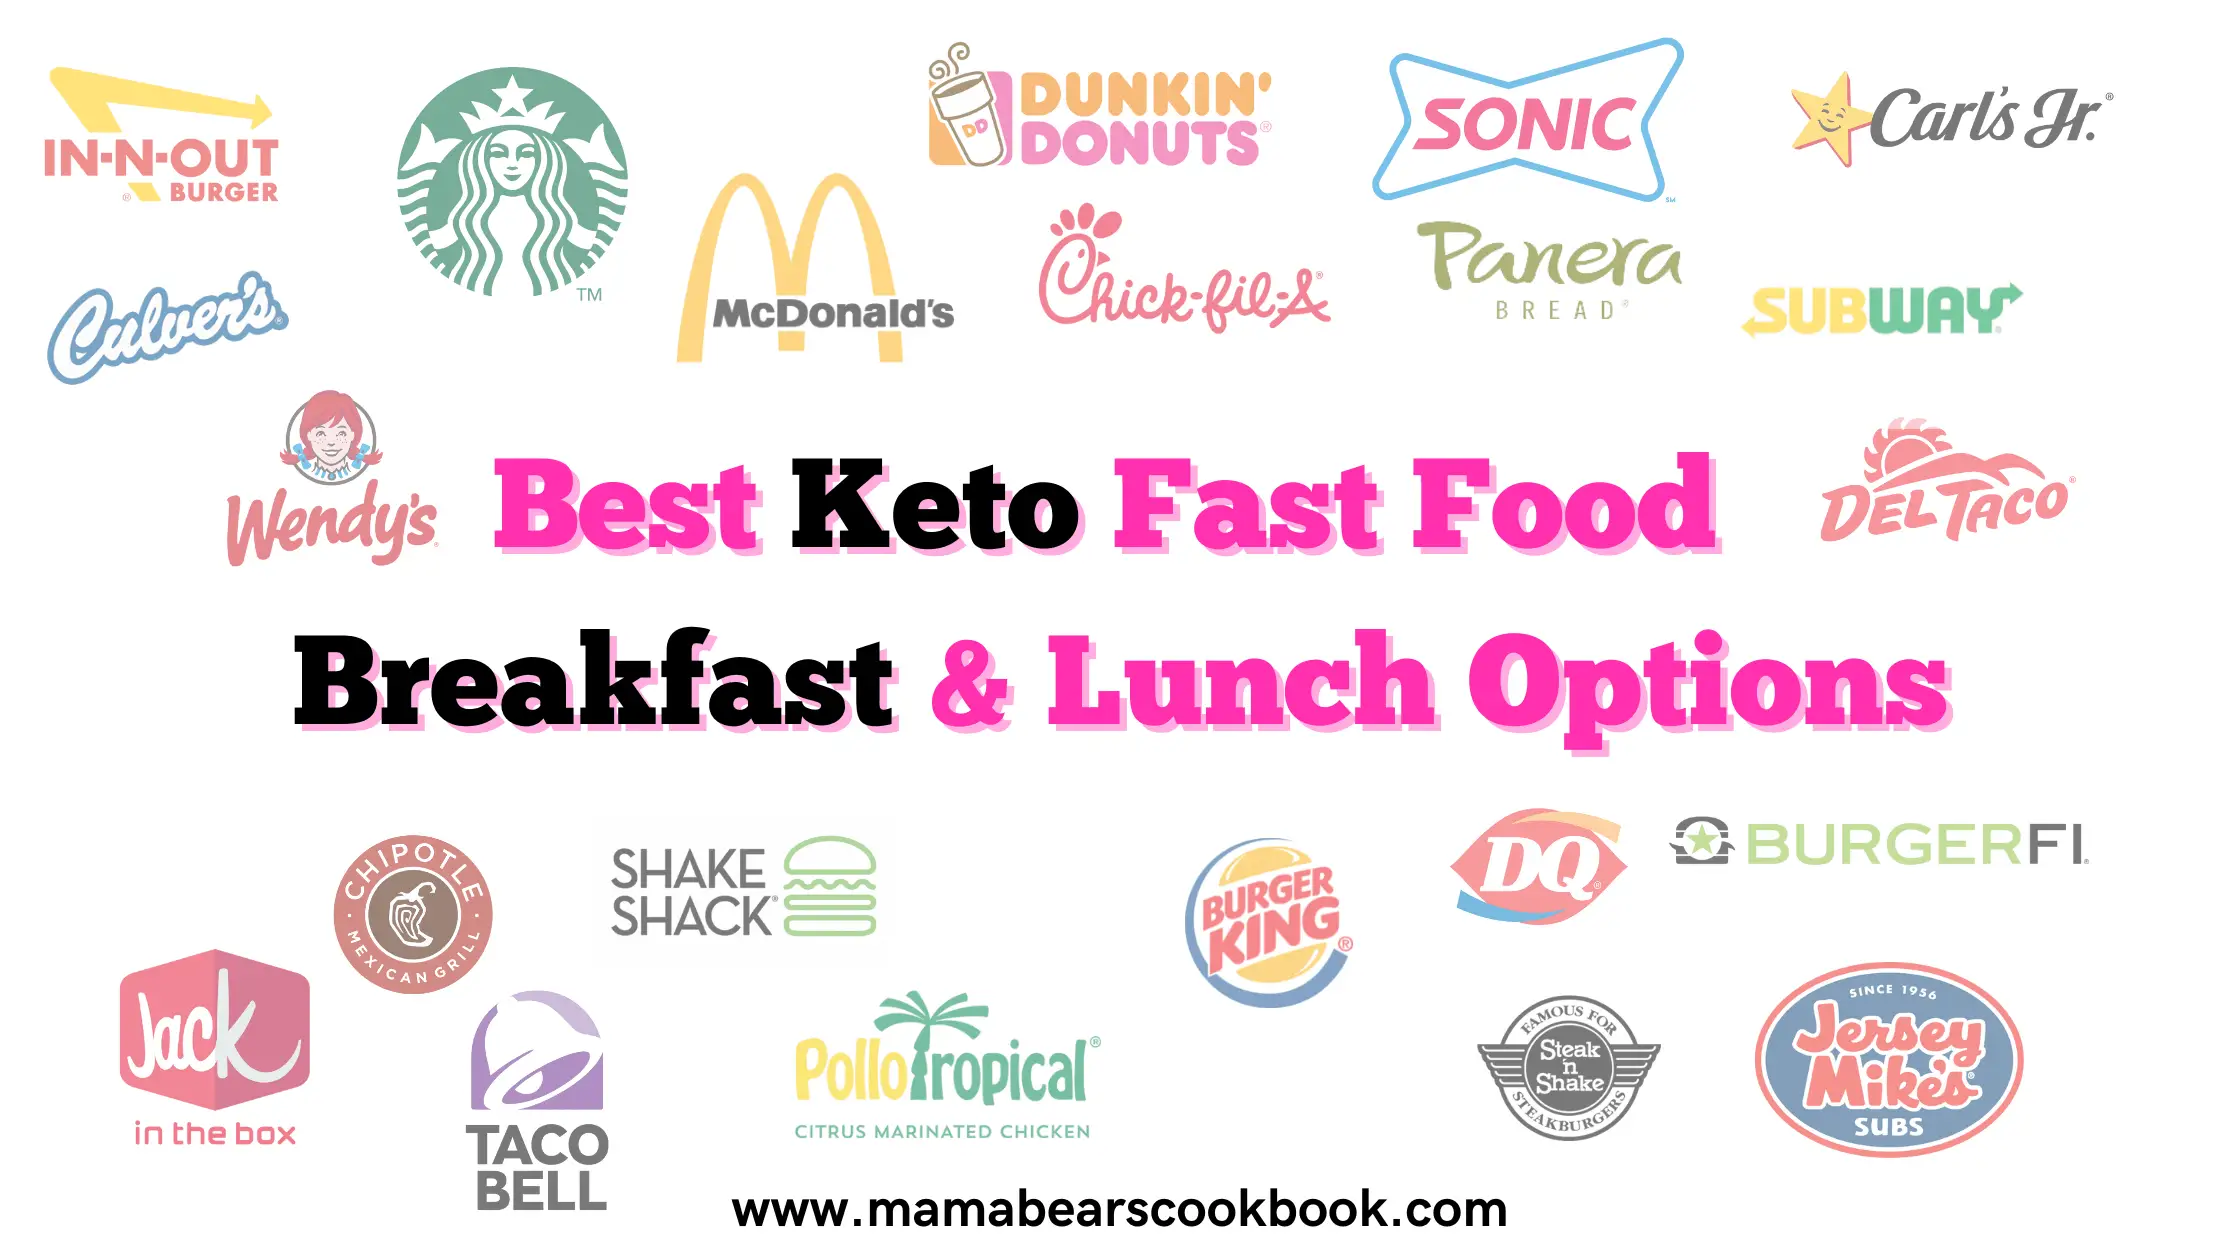 191 Best Keto Fast Food Breakfast & Lunch Options